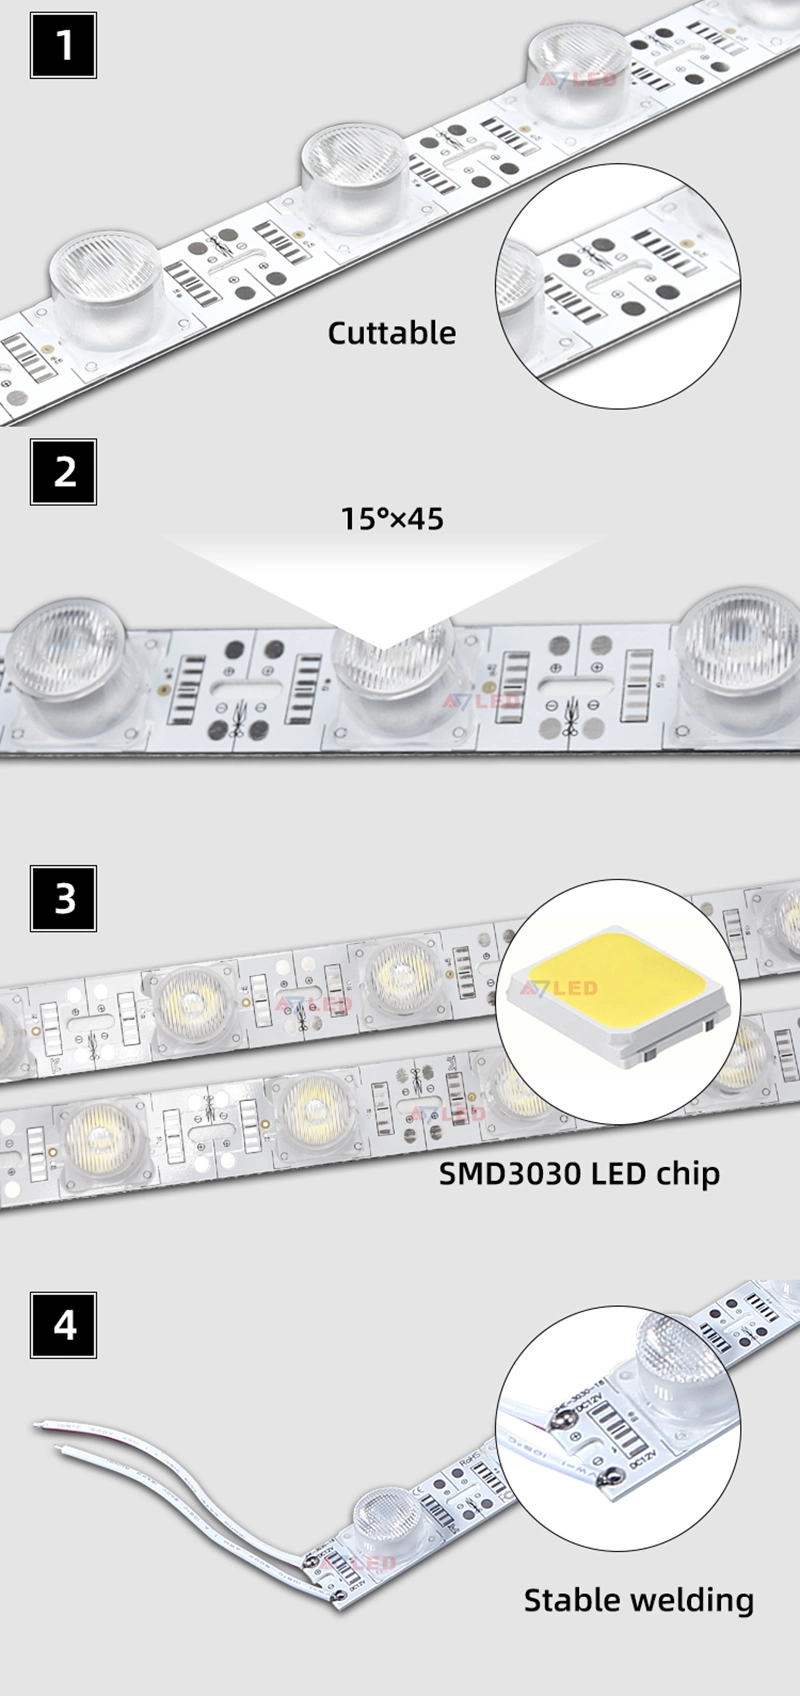 Hot Sale Light Boxes 12V 24V SMD 3030 Edge Light High Power LED Strip LED 18LEDs Rigid Light Bar with Lens